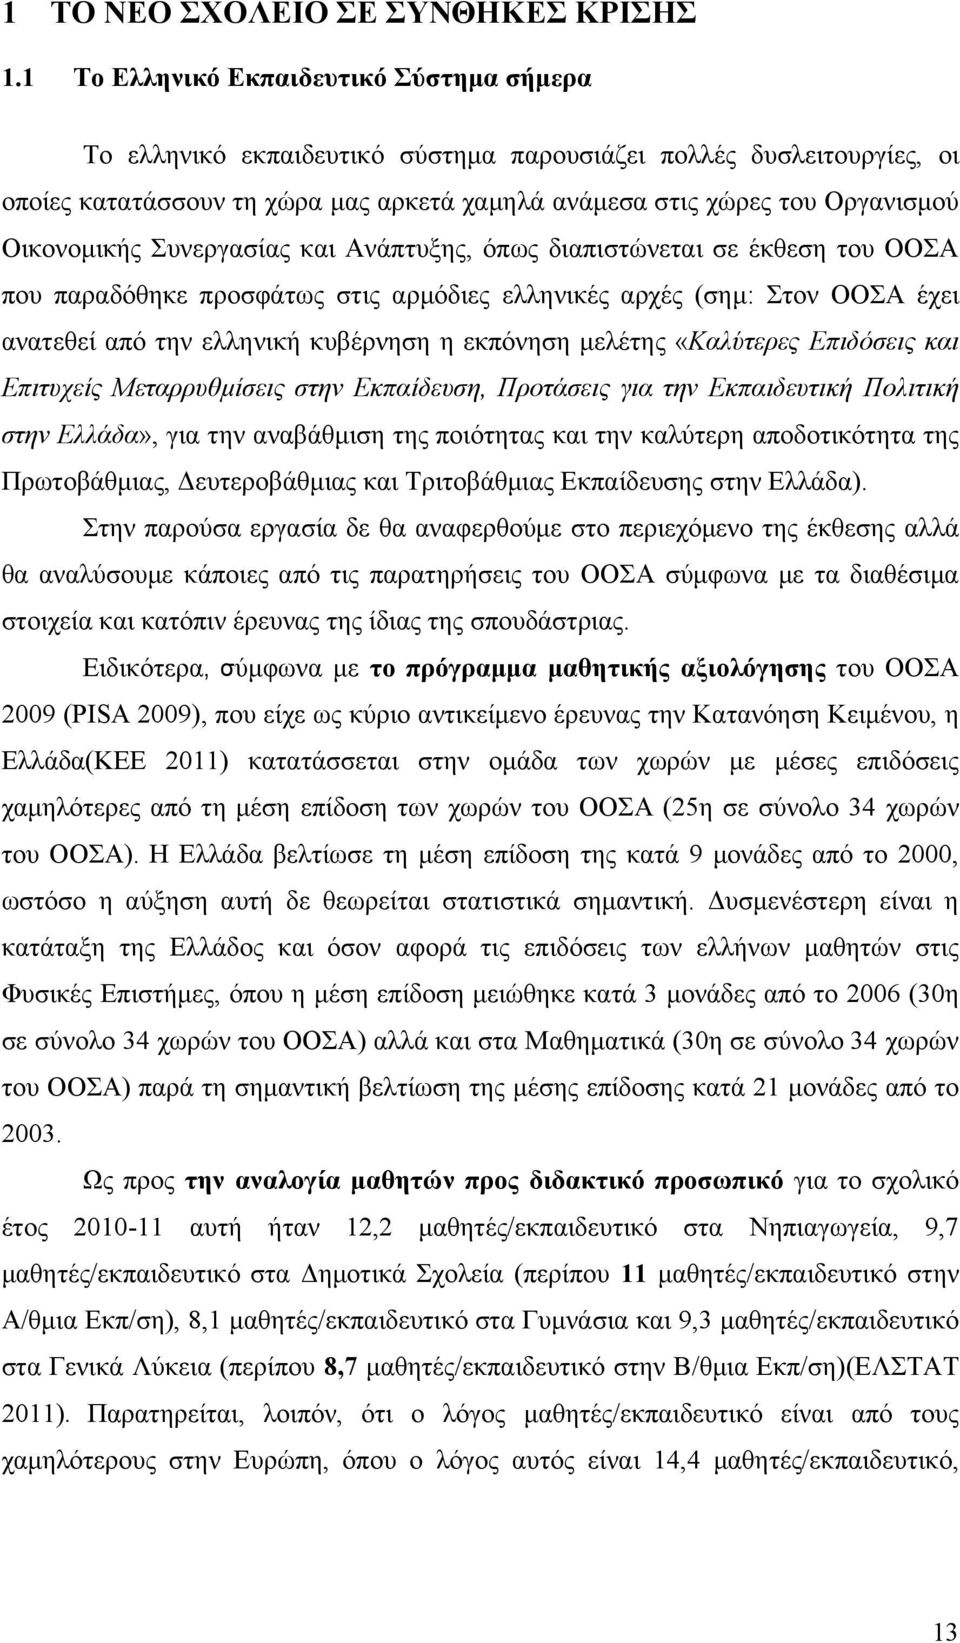 Οικονομικής Συνεργασίας και Ανάπτυξης, όπως διαπιστώνεται σε έκθεση του ΟΟΣΑ που παραδόθηκε προσφάτως στις αρμόδιες ελληνικές αρχές (σημ: Στον ΟΟΣΑ έχει ανατεθεί από την ελληνική κυβέρνηση η εκπόνηση